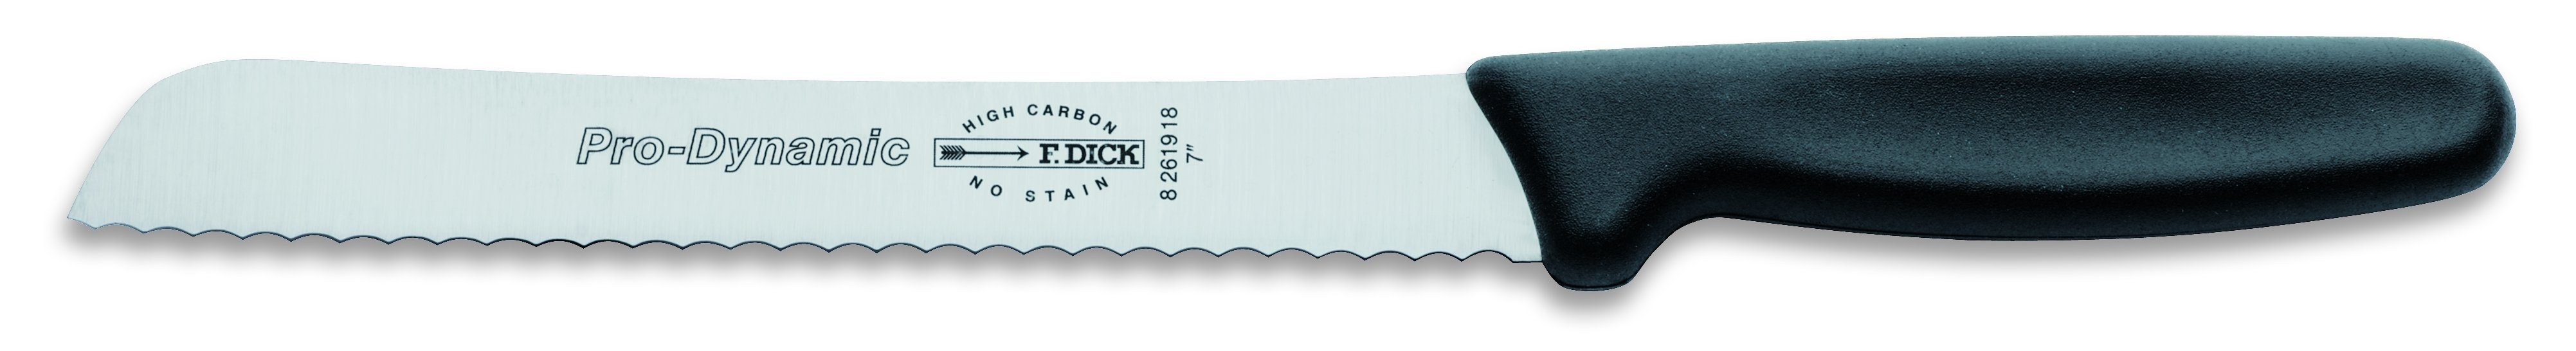 Klingenlänge F. DICK ProDynamic Brotmesser Brotmesser DICK 18 cm Kochmesser F.